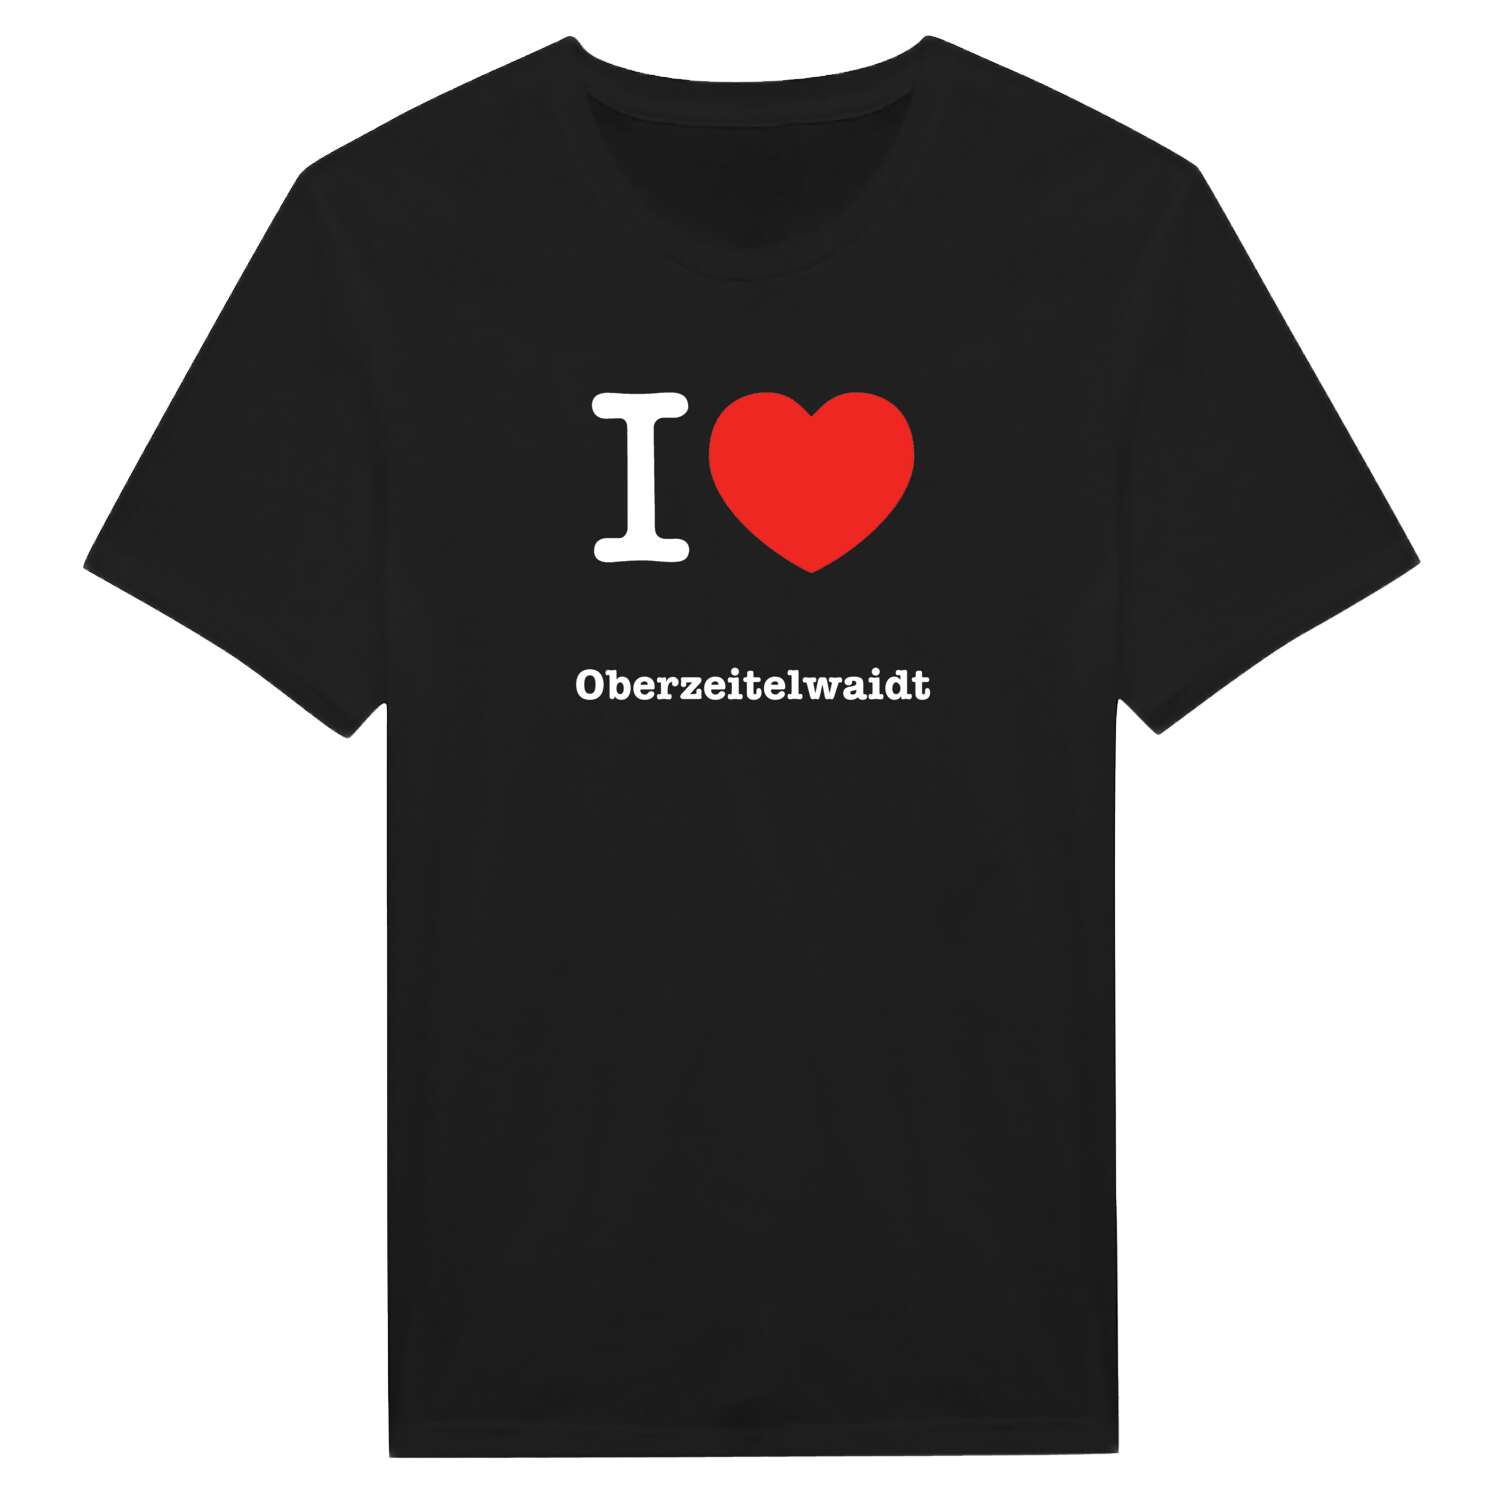 Oberzeitelwaidt T-Shirt »I love«